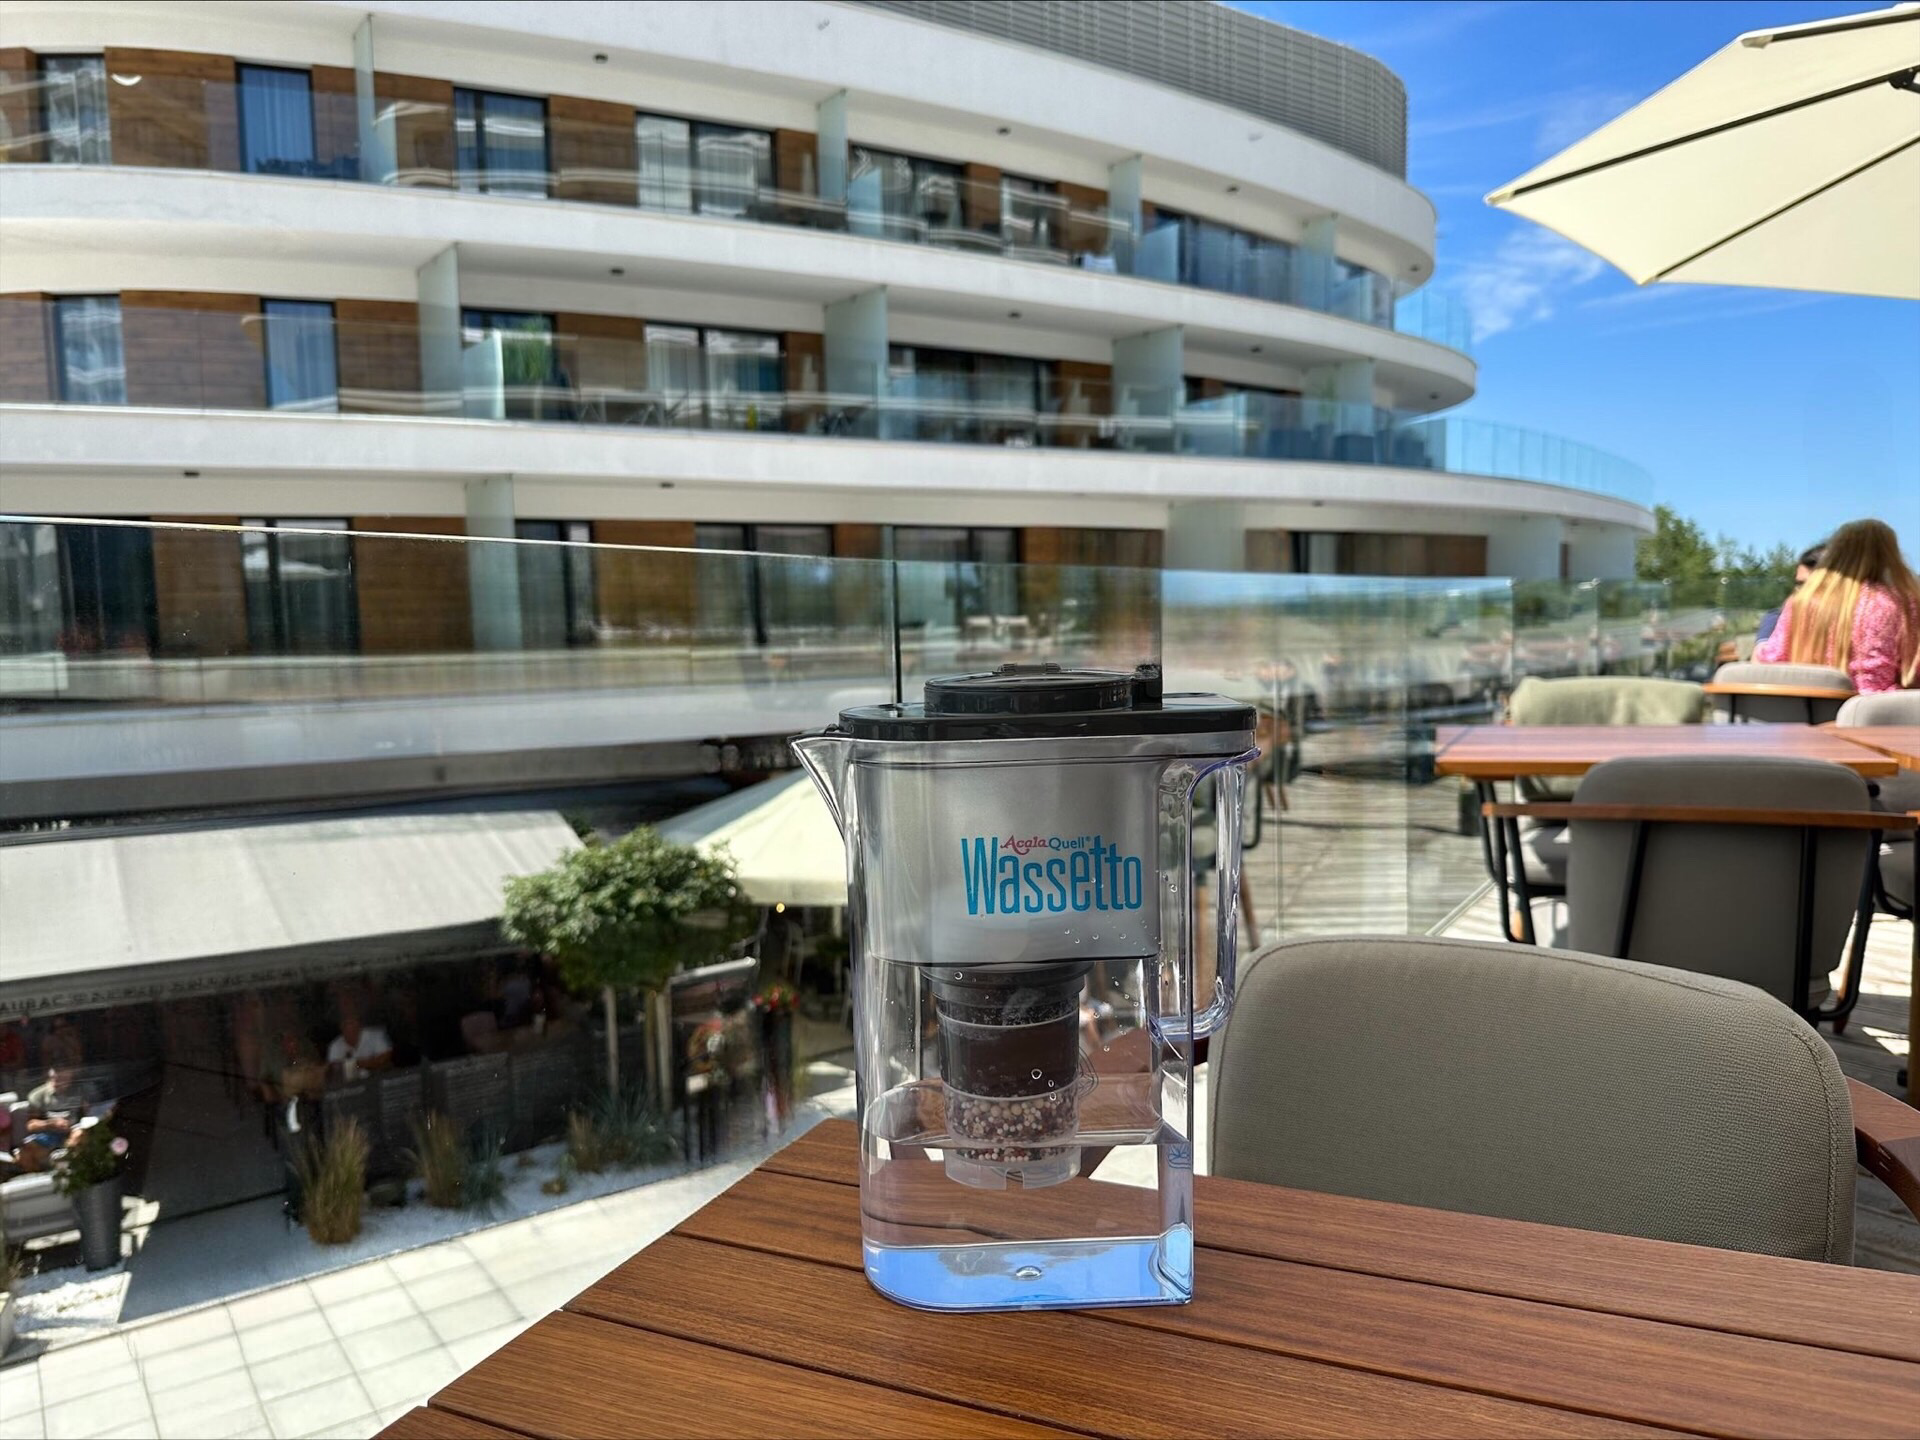 Wassetto Kannen Wasserfilter auf einem Holztisch. Im Hintergrund sieht man einen Hotelkomplex und strahlend blauen Himmel.